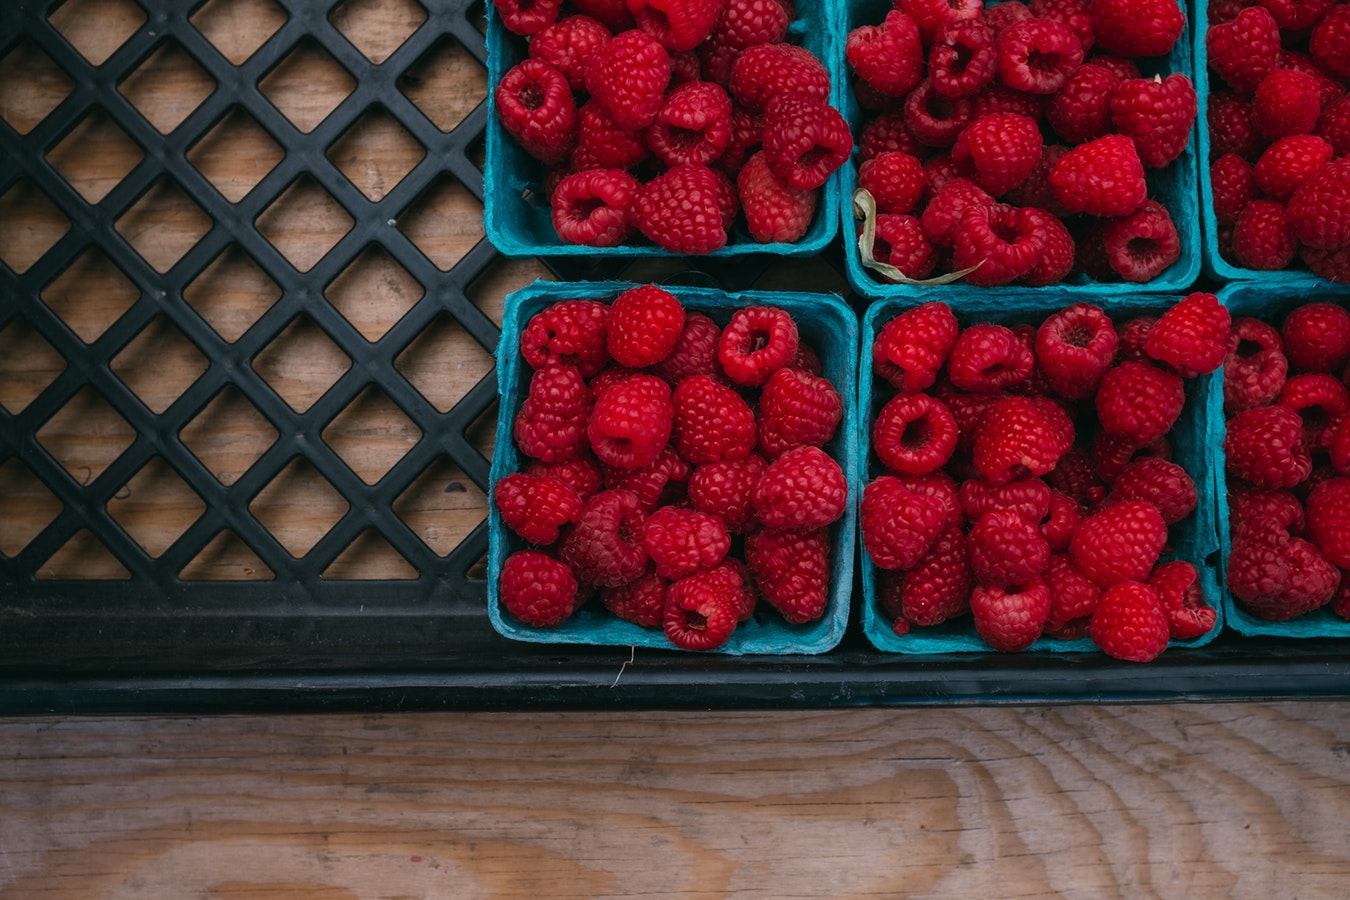 红润系列水果图片 让人看了食欲大增的水果